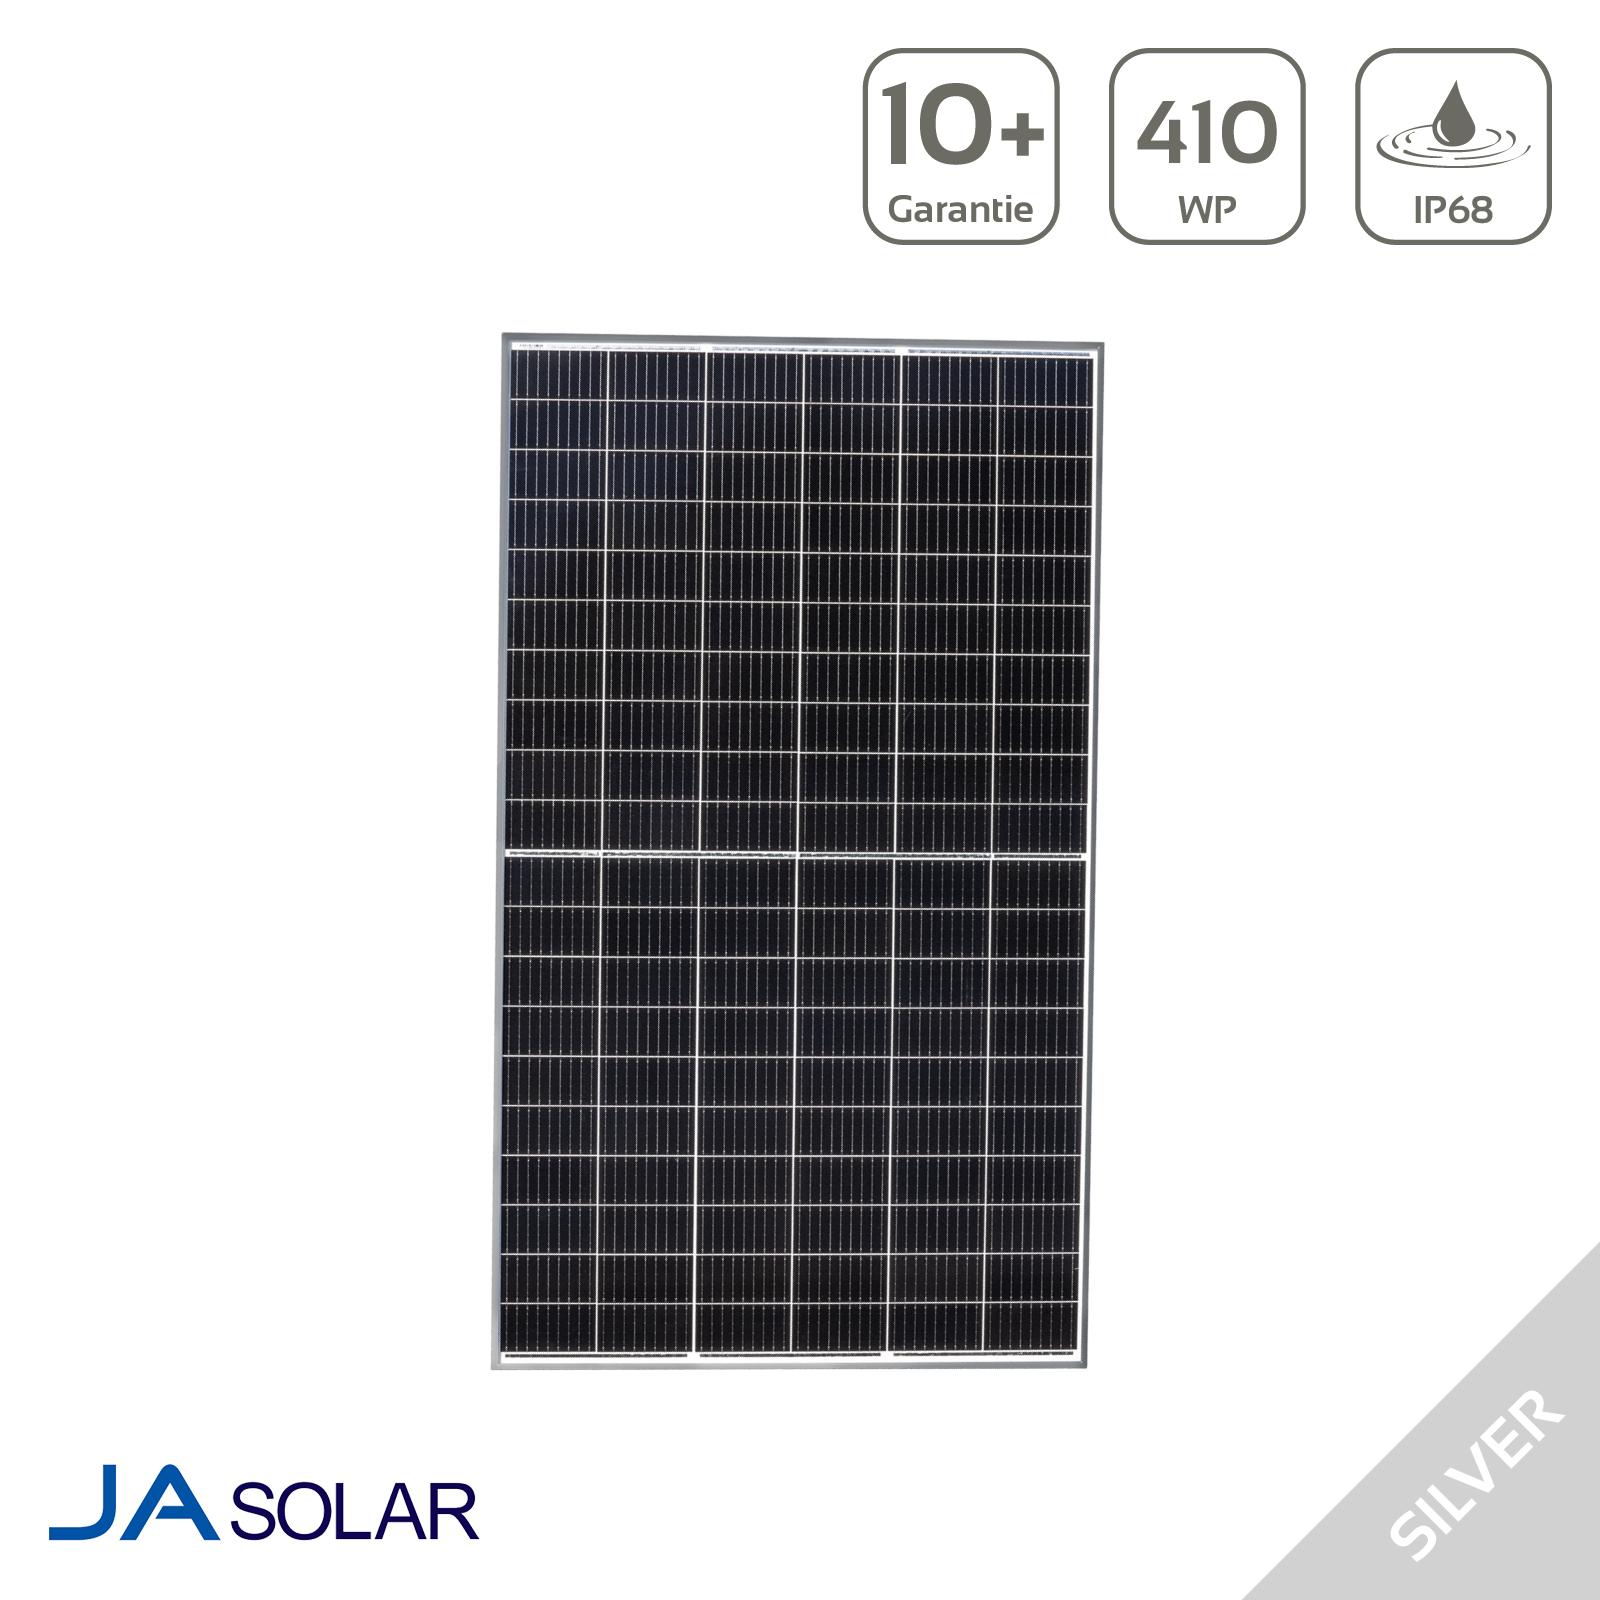 JASolar 410 Watt Silver Frame Photovoltaikmodul JAM54S30-410MR - MwSt: 0% NUR für Privatkunden